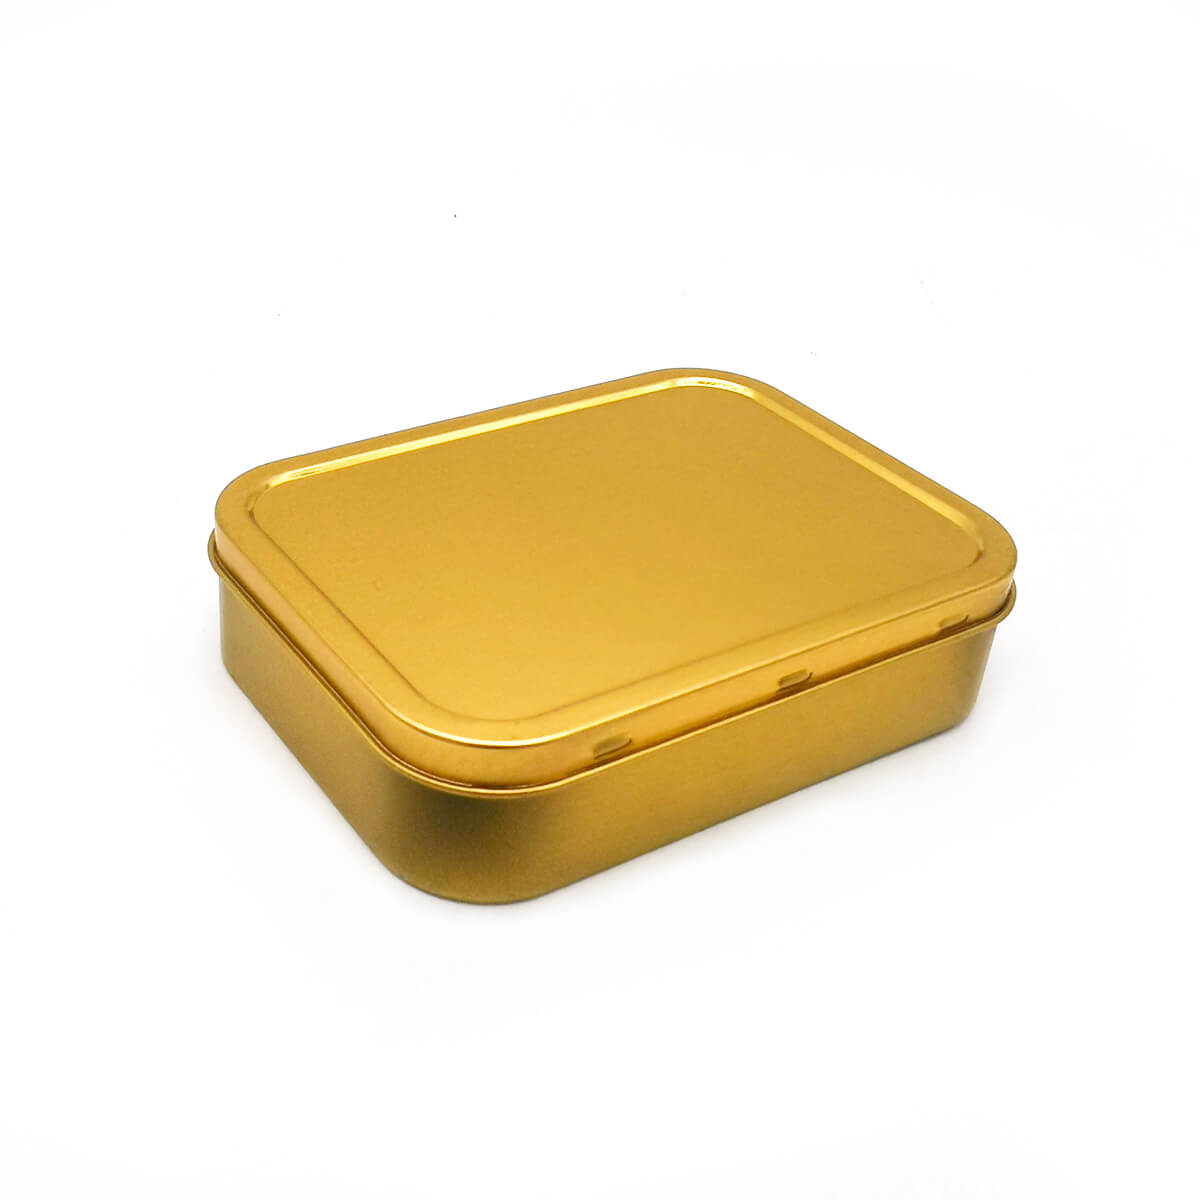 2oz (125ml) Airtight Gold & Silver Color Tobacco Tin Box